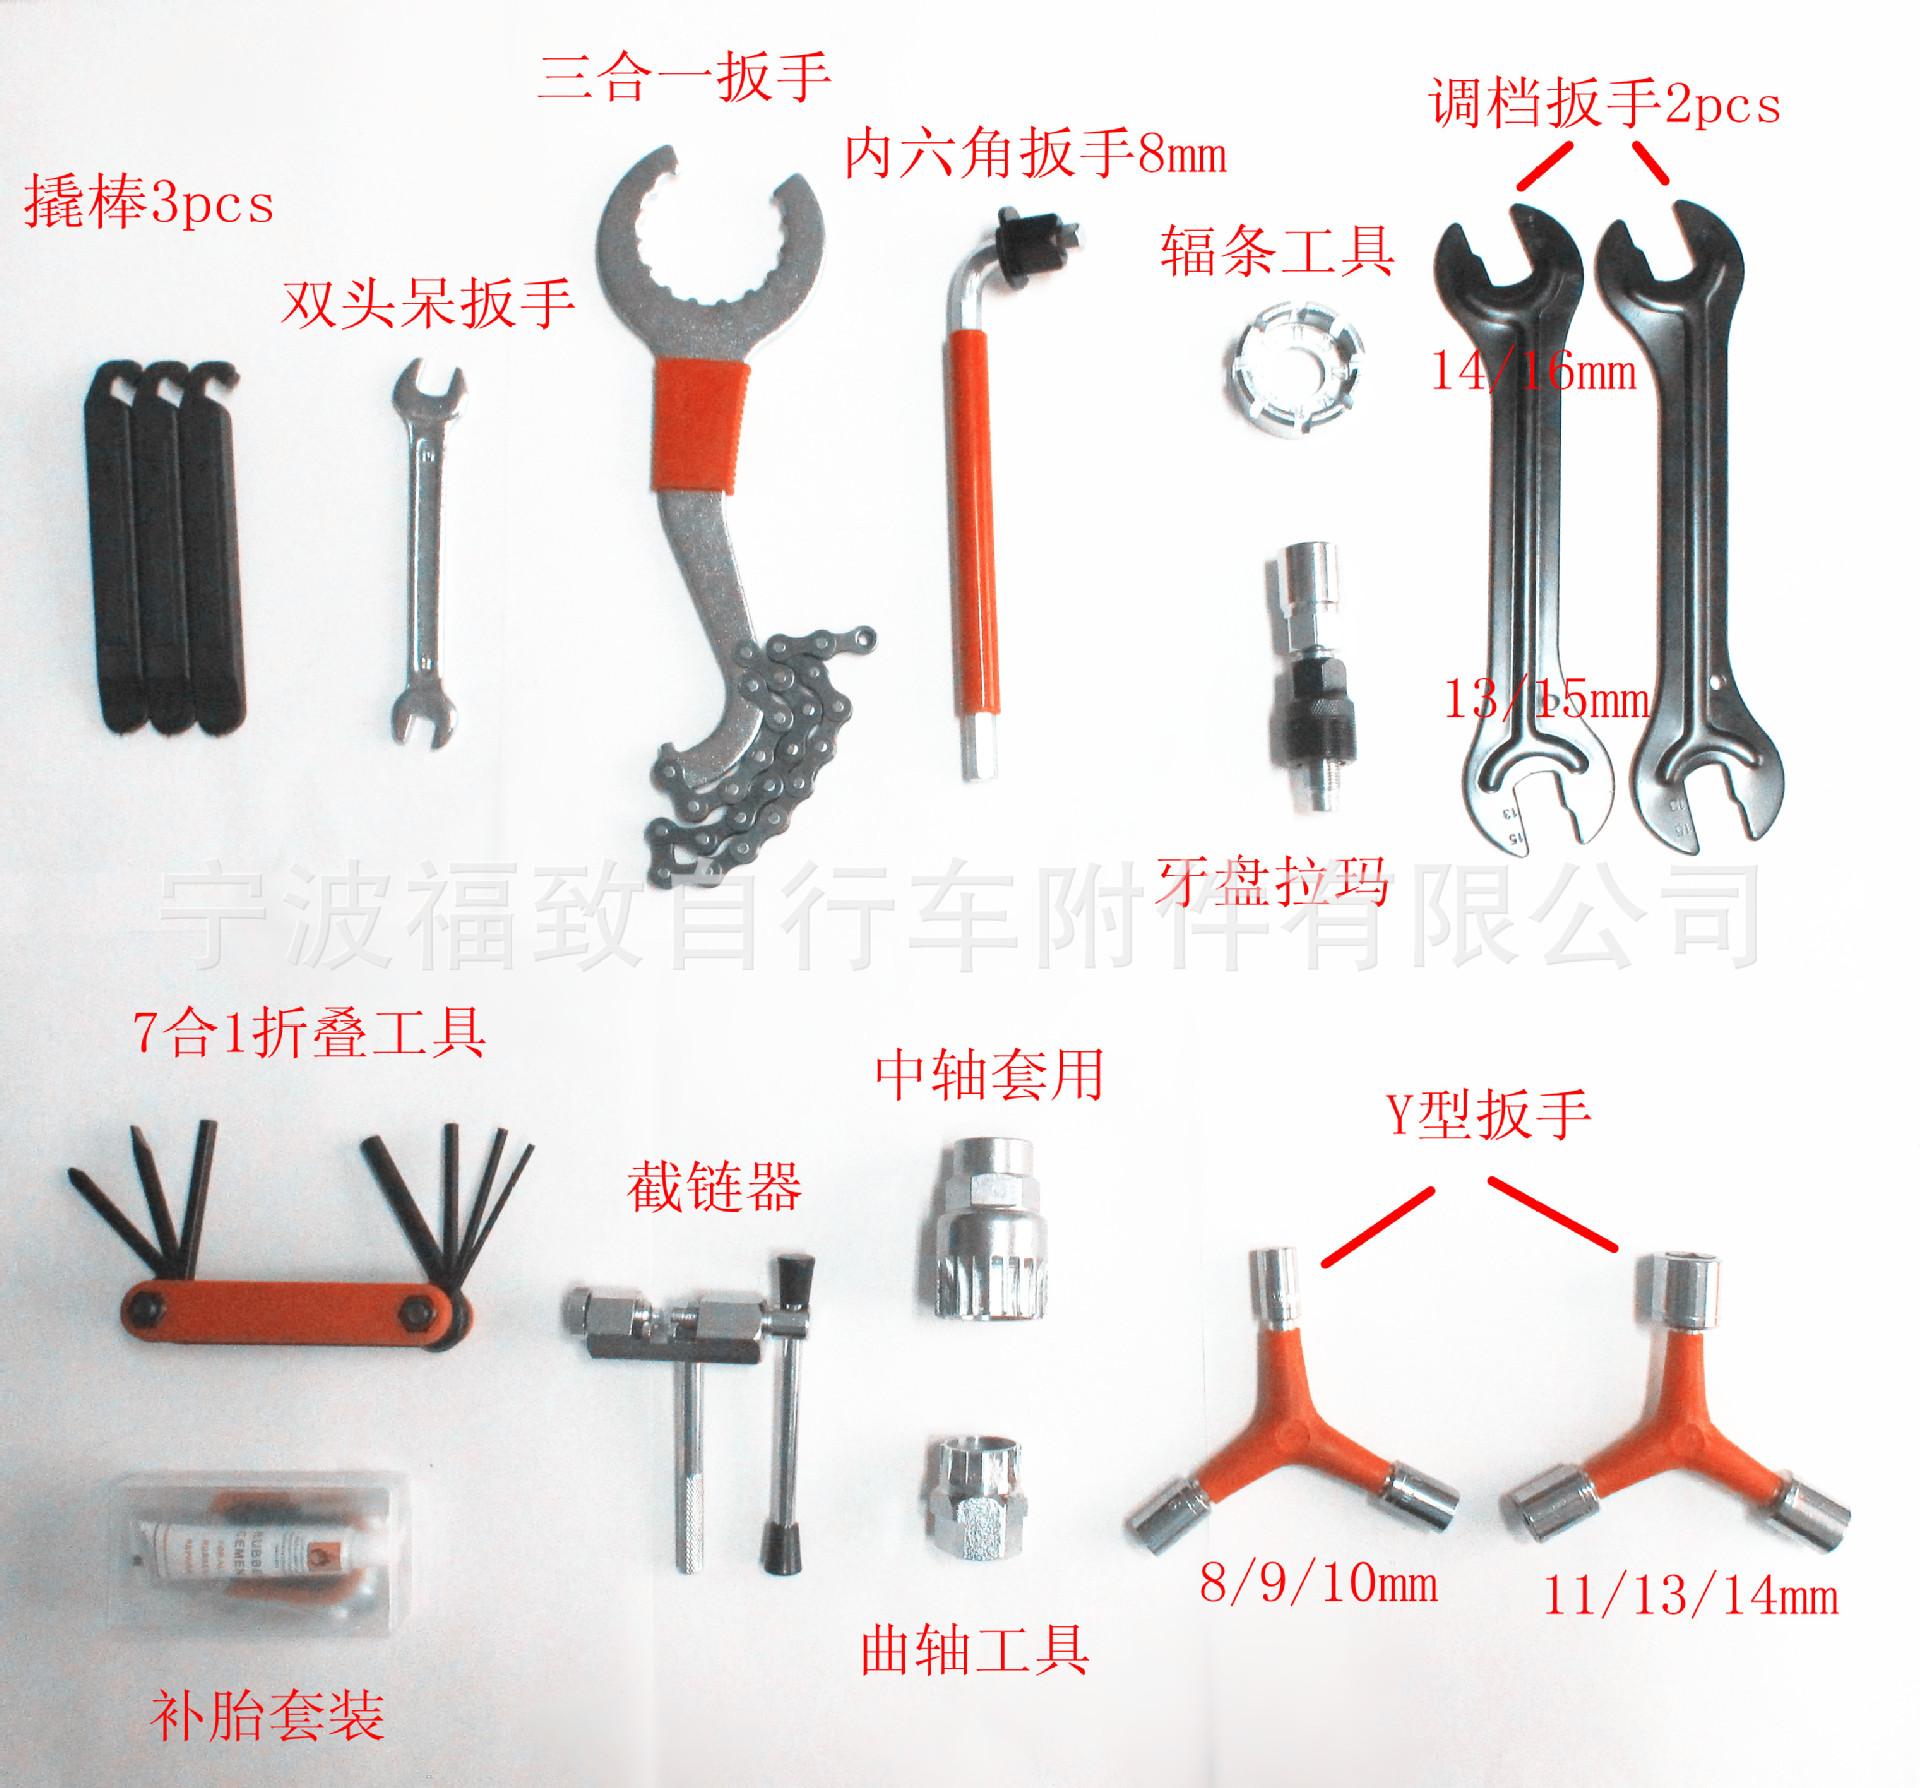 自行车工具箱套装\自行车组装拆卸工具组合中轴扳手fsbrk-044-7